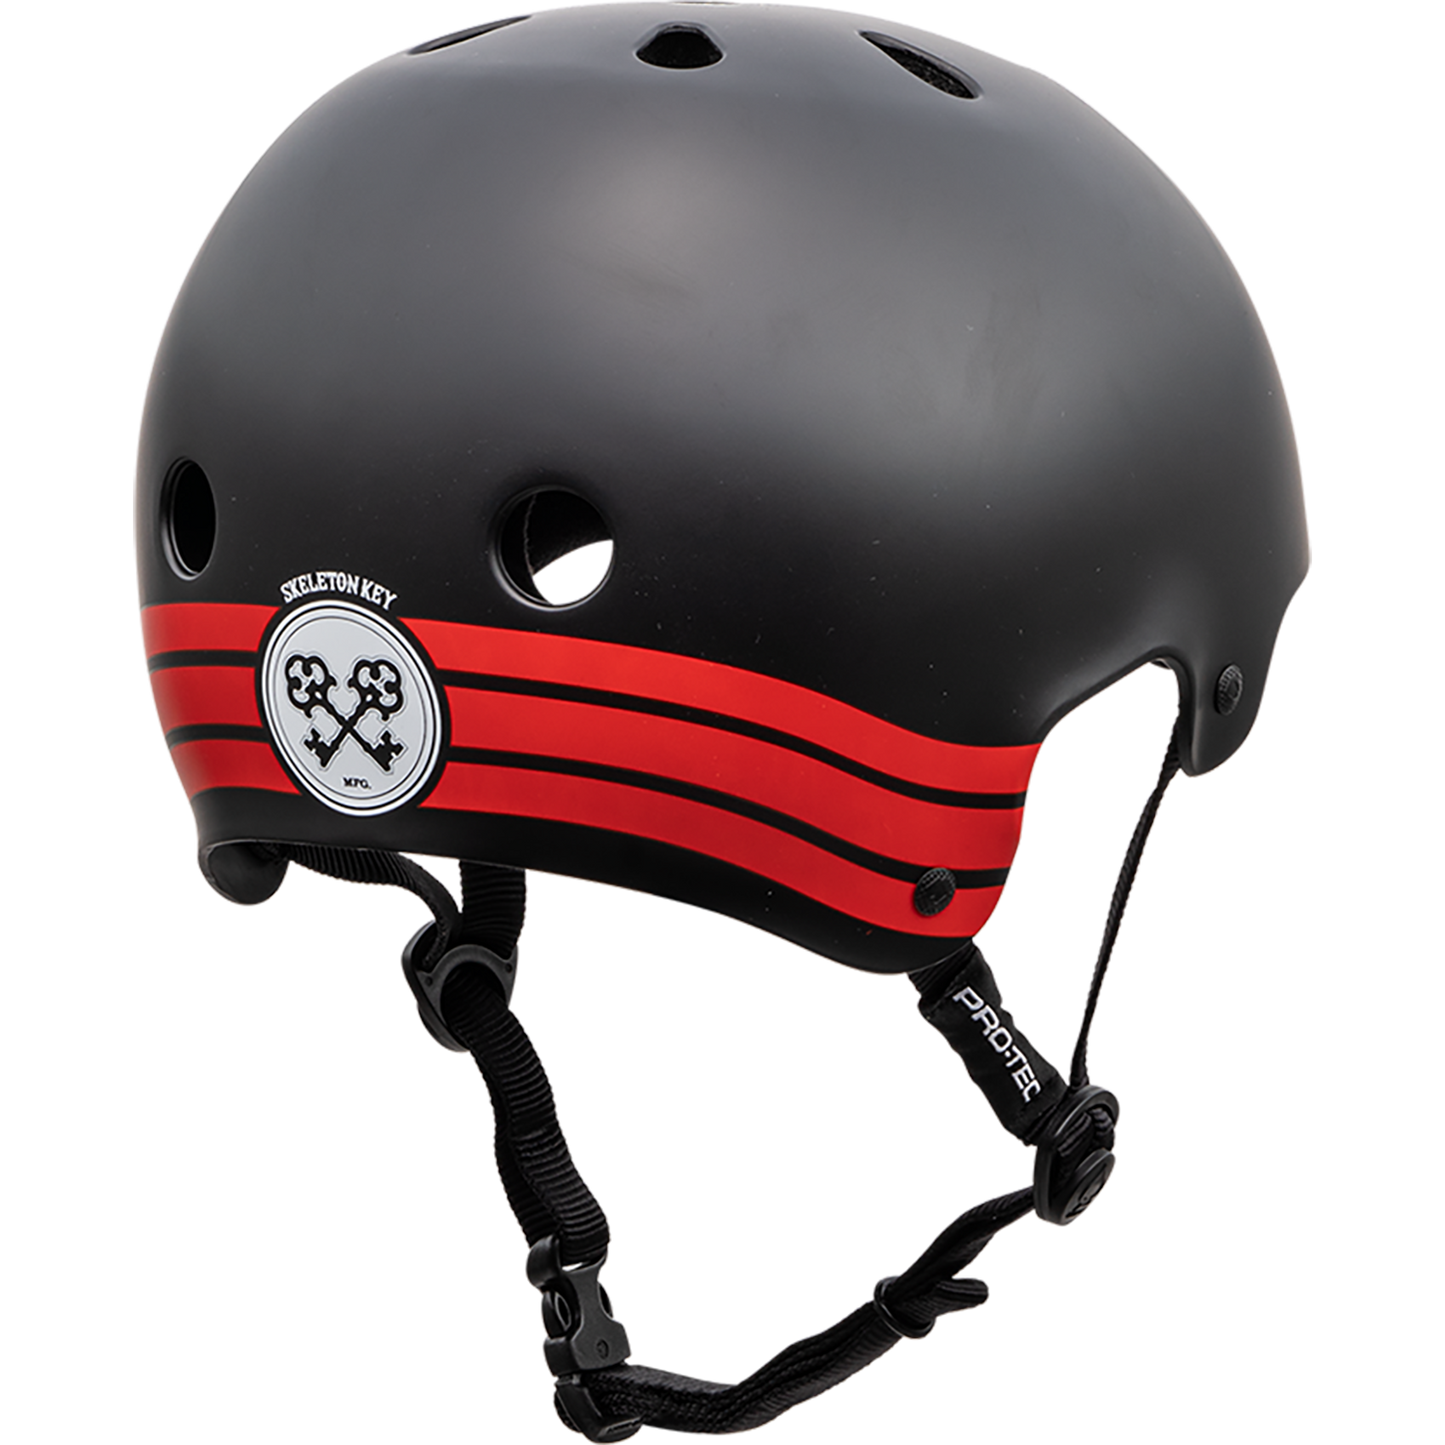 Protec Old School Skeleton Key Black/Red Helmet